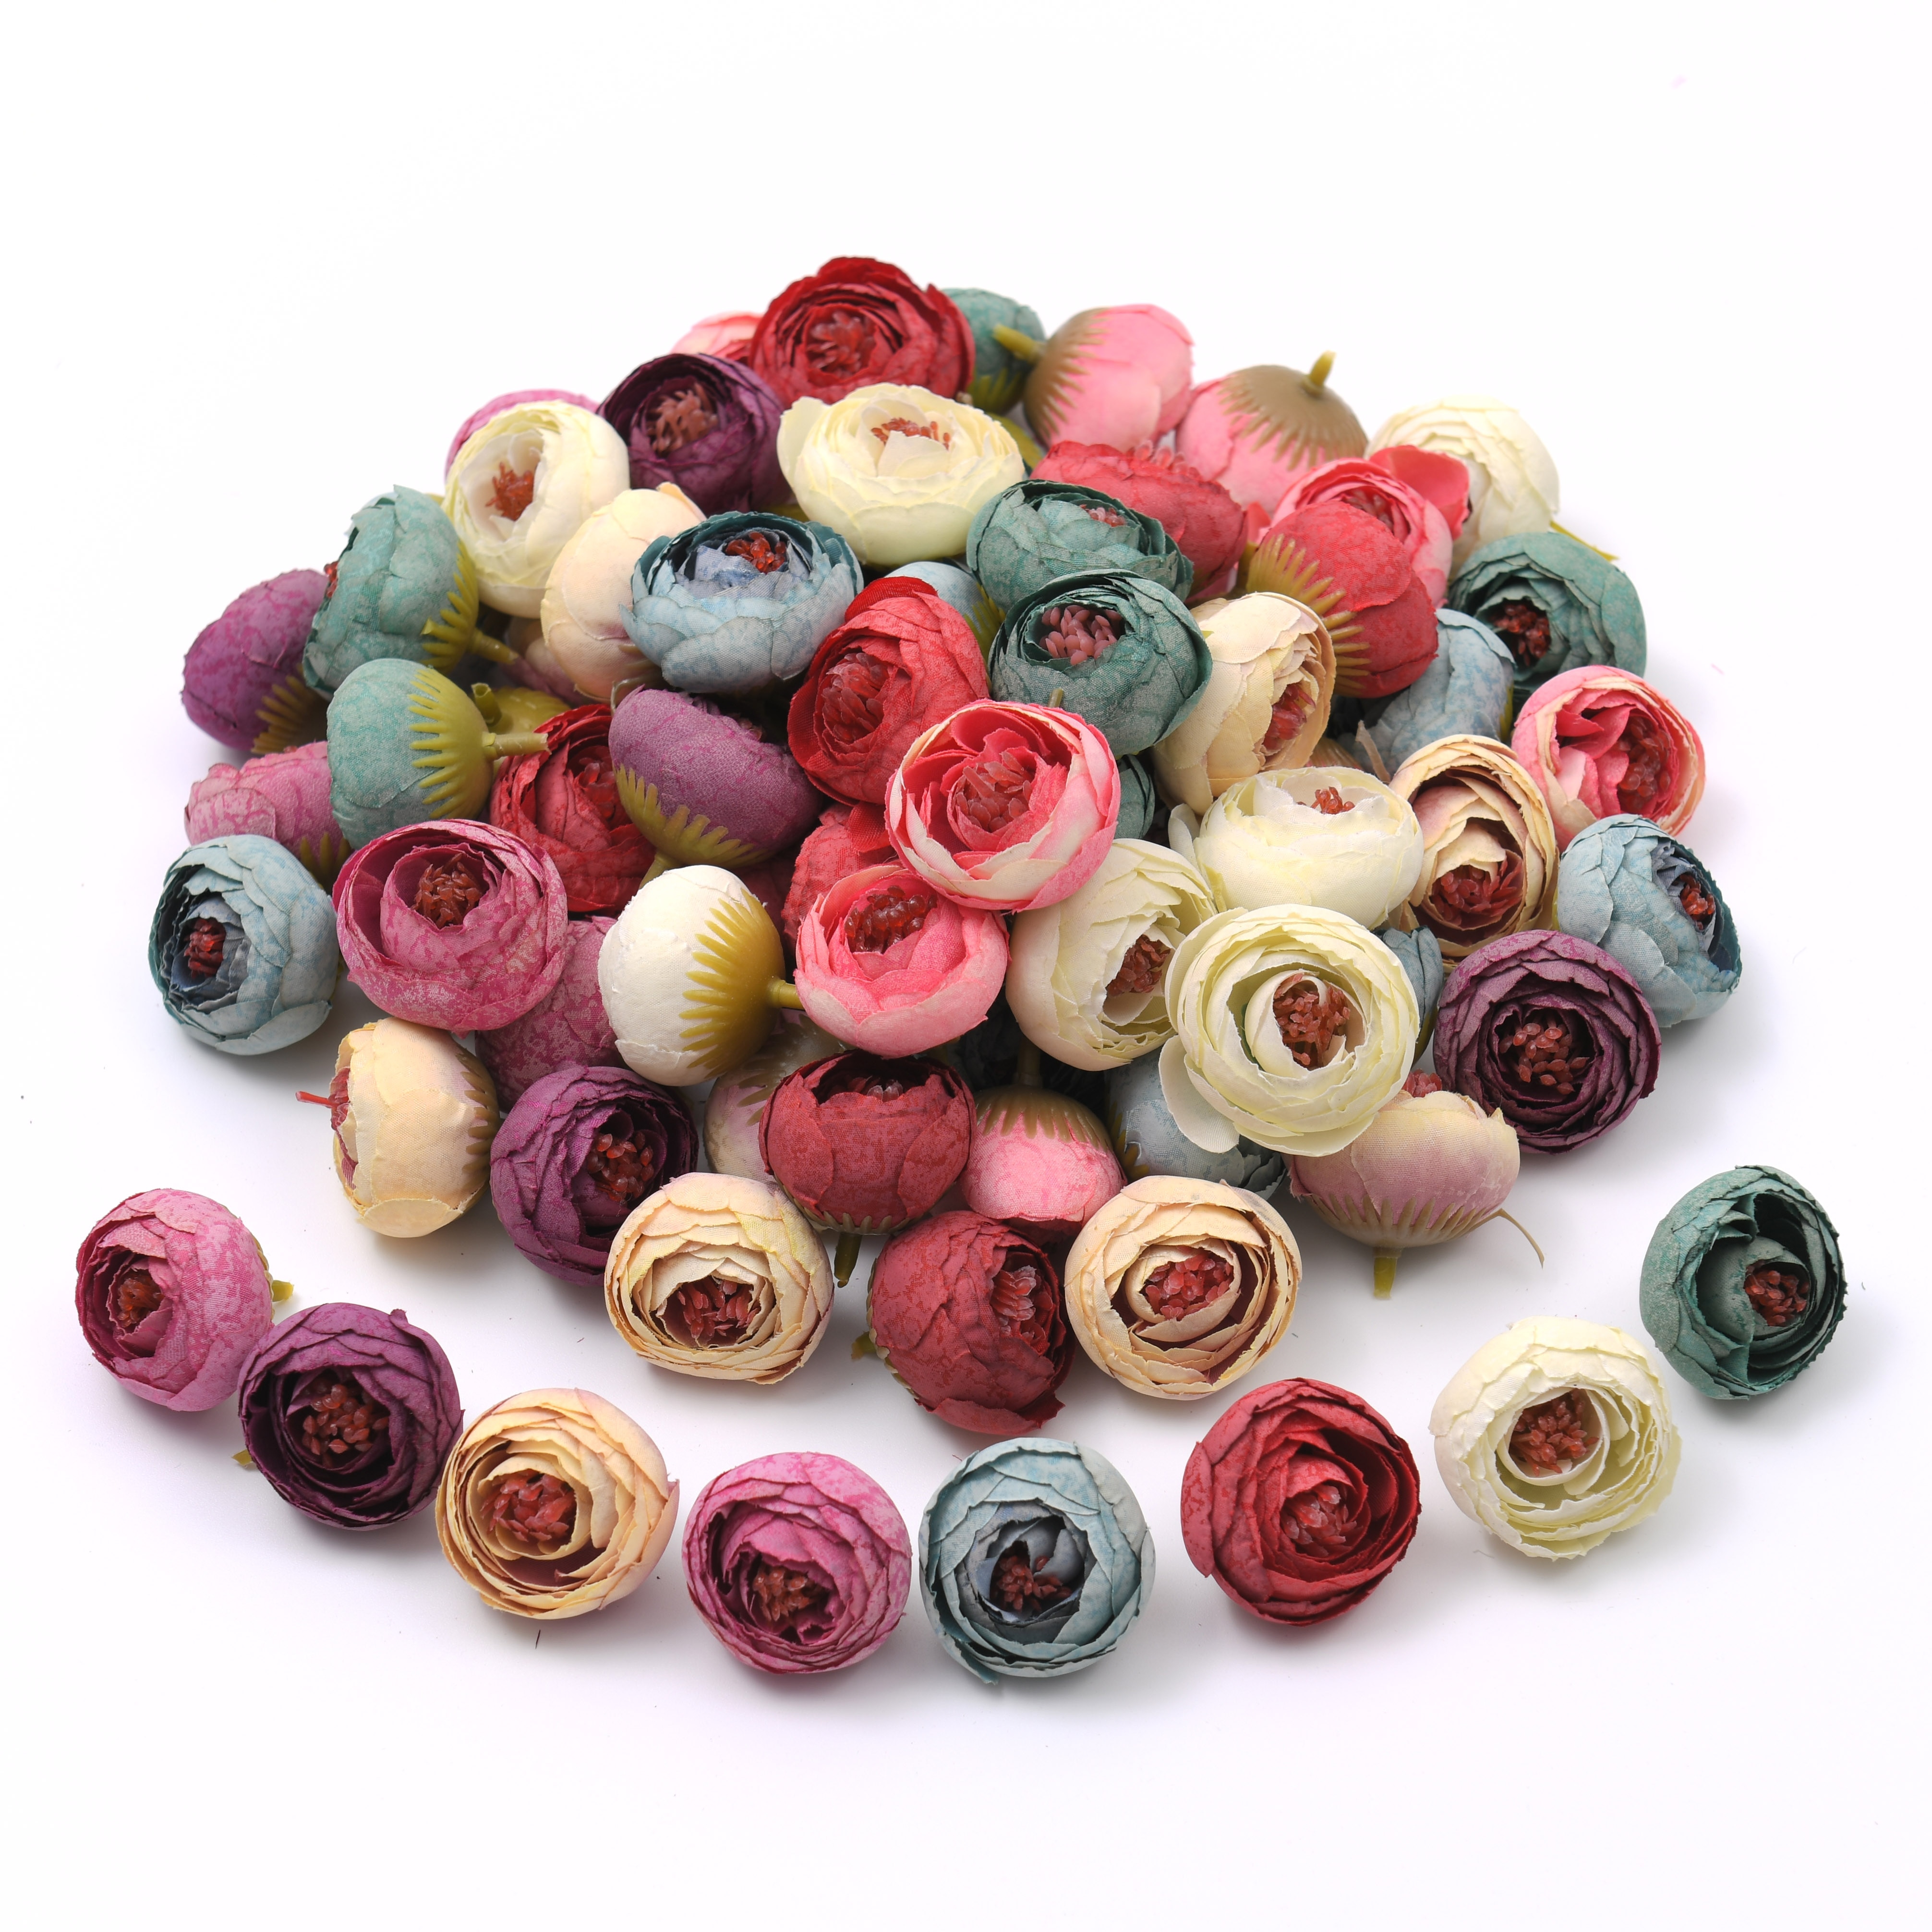 10 stk 4cm mini silke rose knopp kunstig scrapbooking blomst hoved til bryllup dekoration diy krans håndværk blomst tilbehør